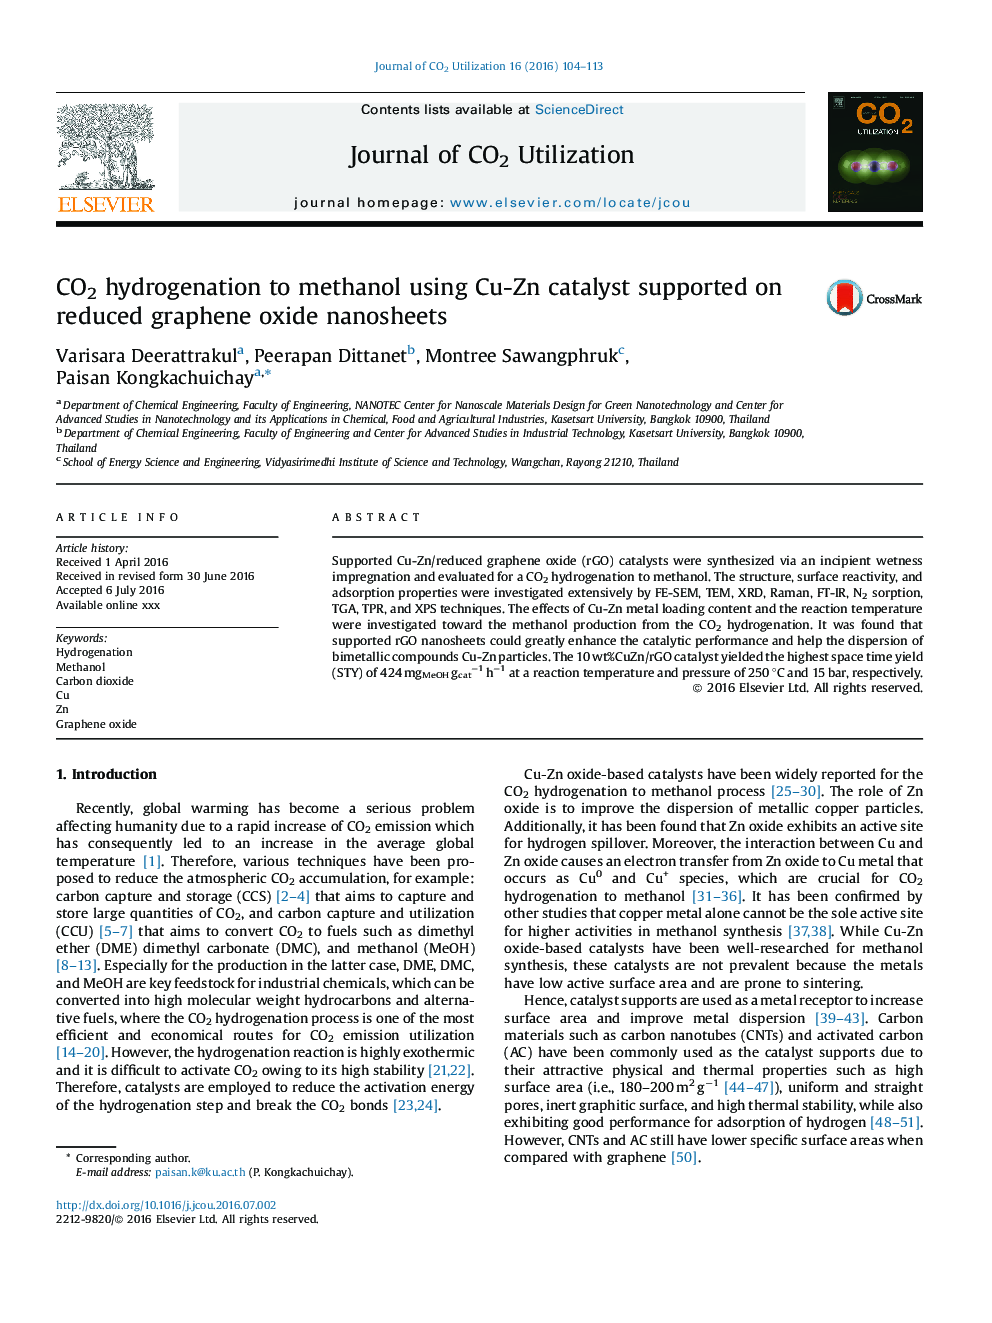 هیدروژناسیون CO2 با متانول با استفاده از کاتالیزور Cu-Zn پشتیبانی شده در نانوصفحات اکسید گرافن کاهشی 